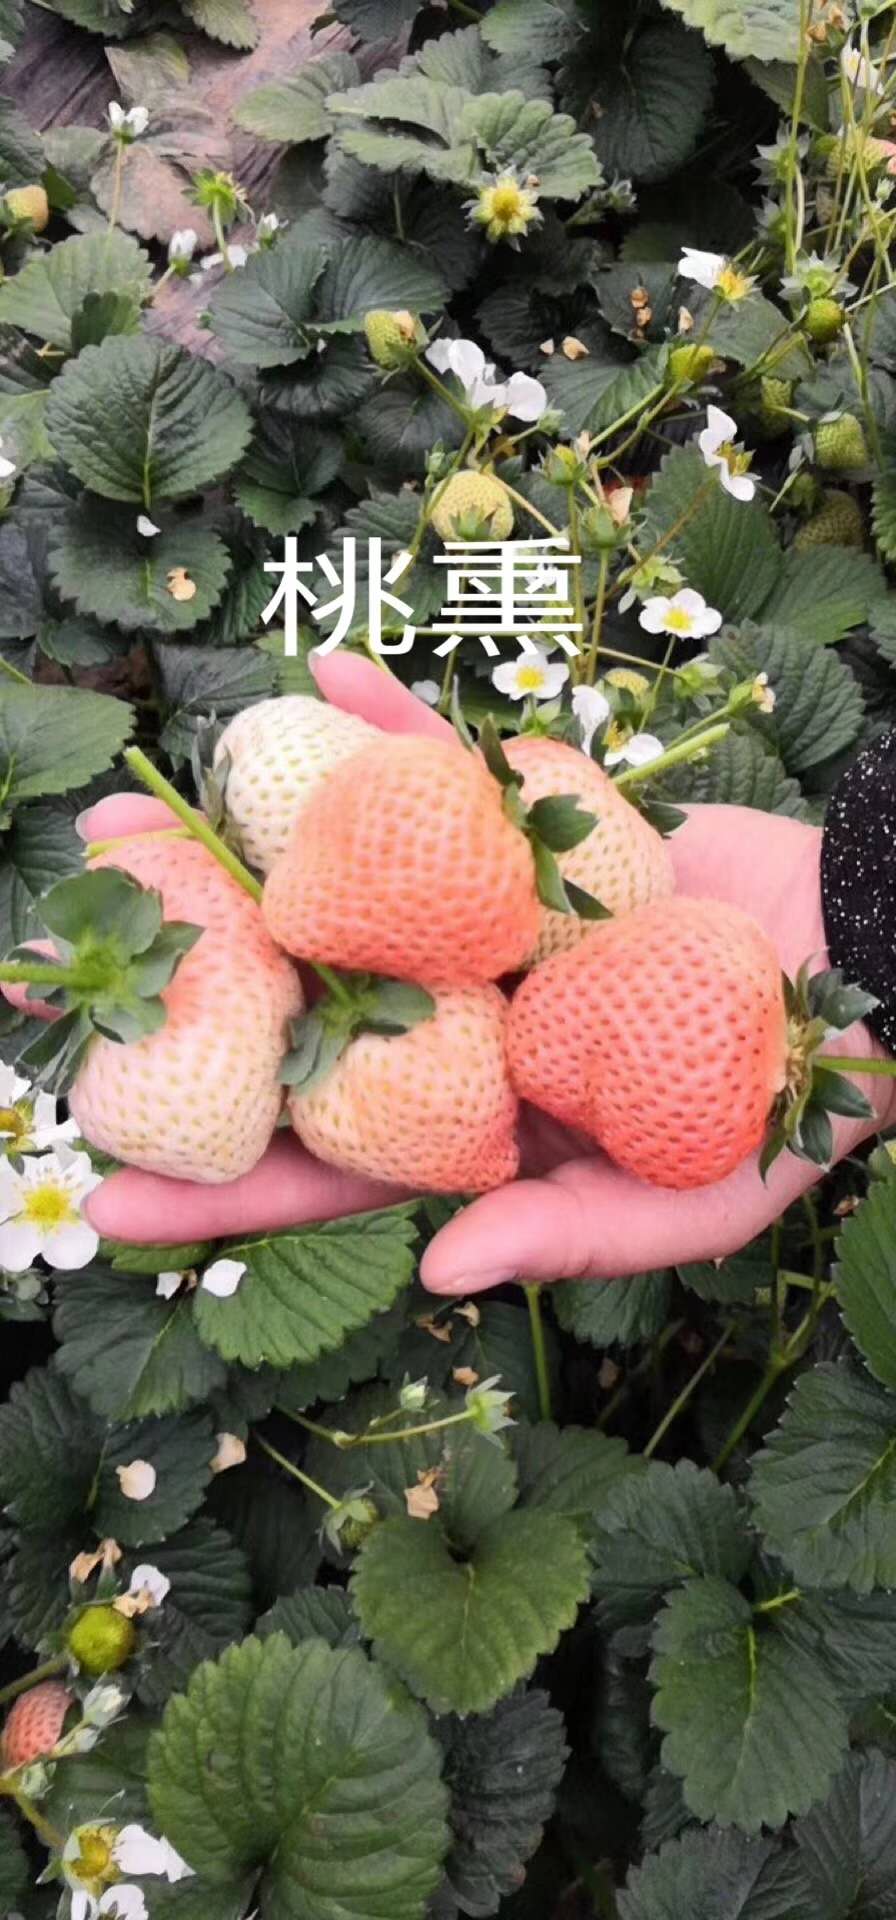 金冠草莓苗报价金冠草莓苗报价